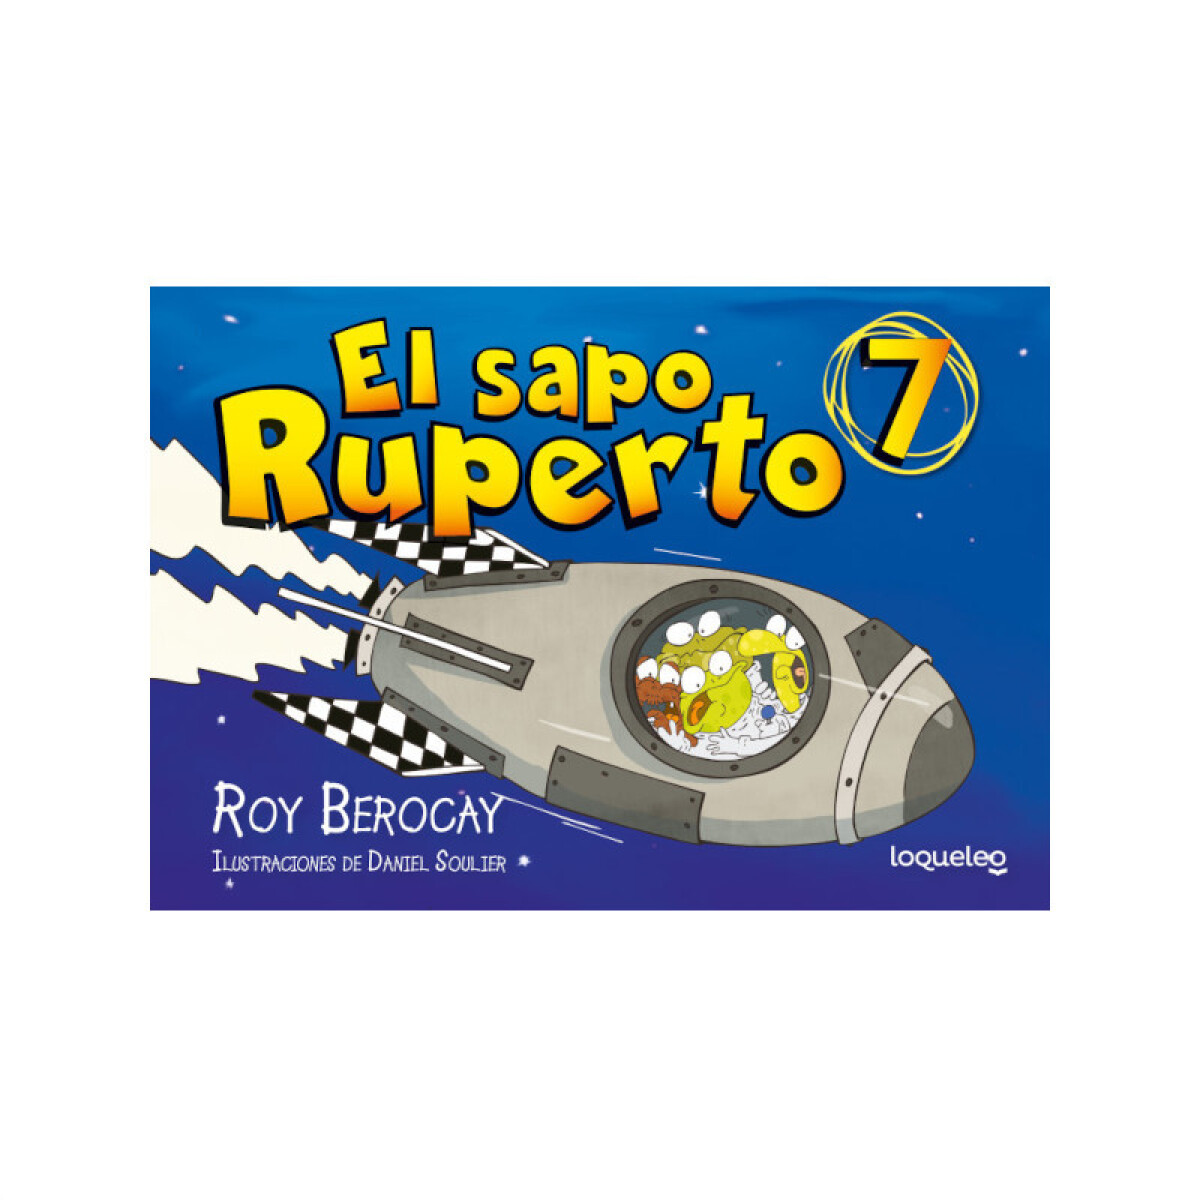 El sapo Ruperto - Cómic 7 - Roy Berocay 